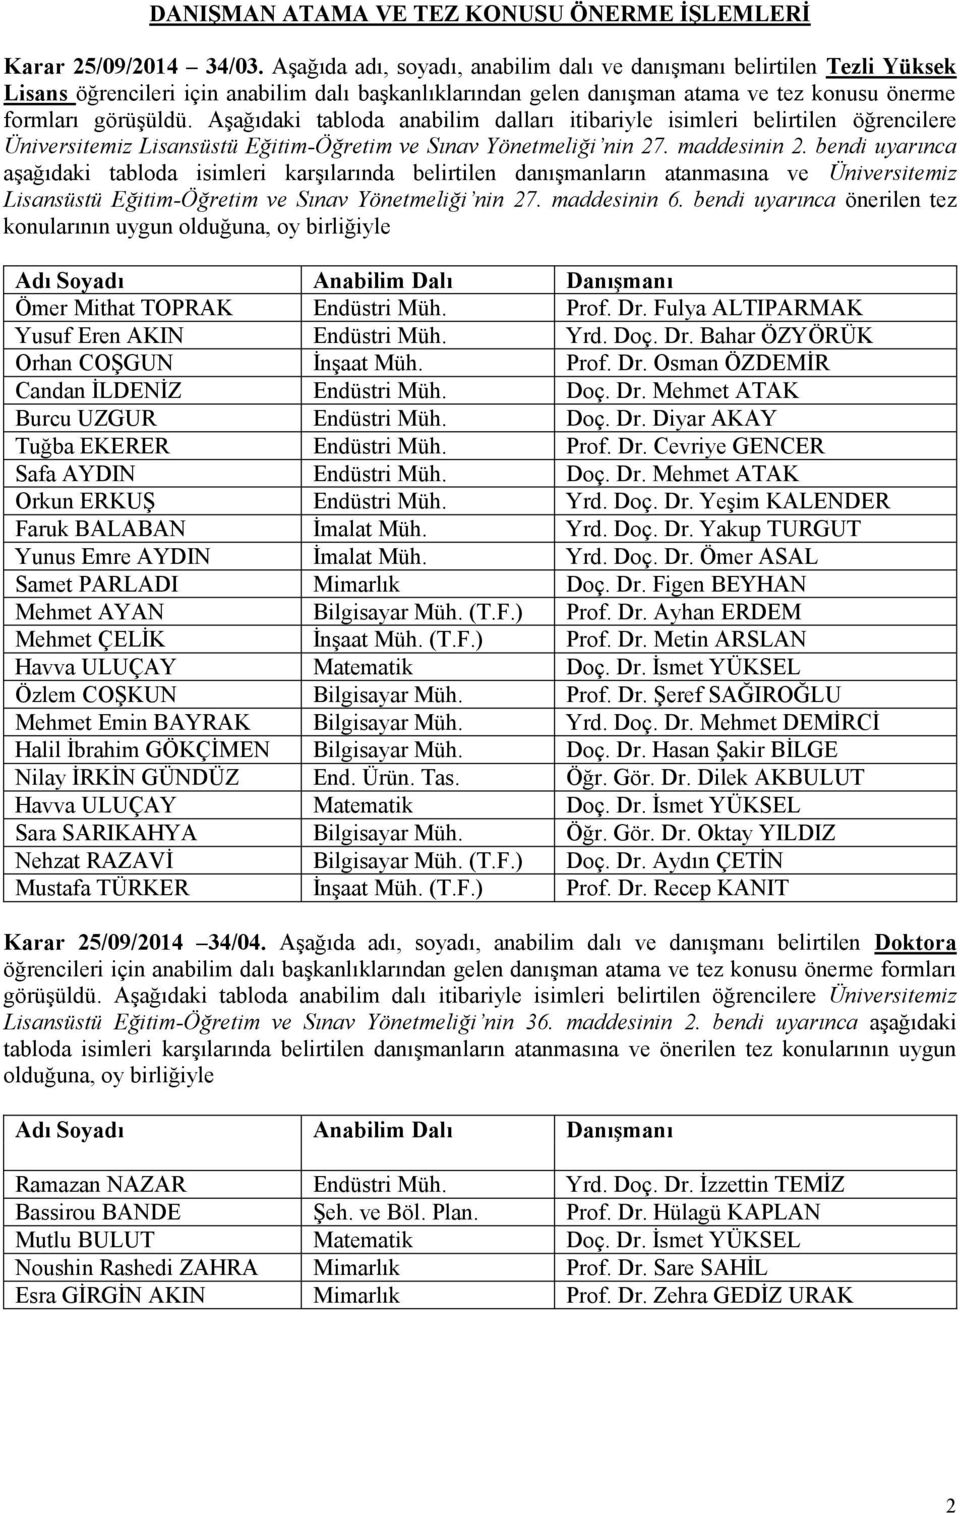 Aşağıdaki tabloda anabilim dalları itibariyle isimleri belirtilen öğrencilere Üniversitemiz Lisansüstü Eğitim-Öğretim ve Sınav Yönetmeliği nin 27. maddesinin 2.